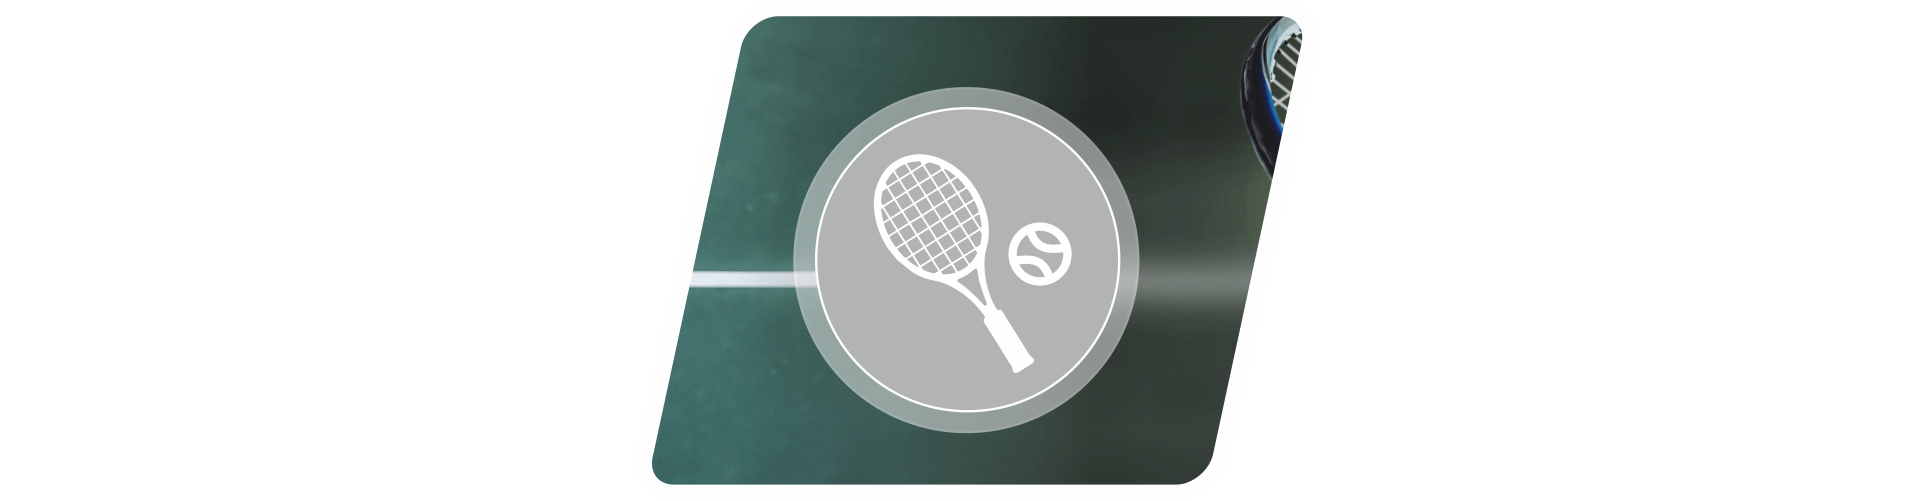 Tenis 1b